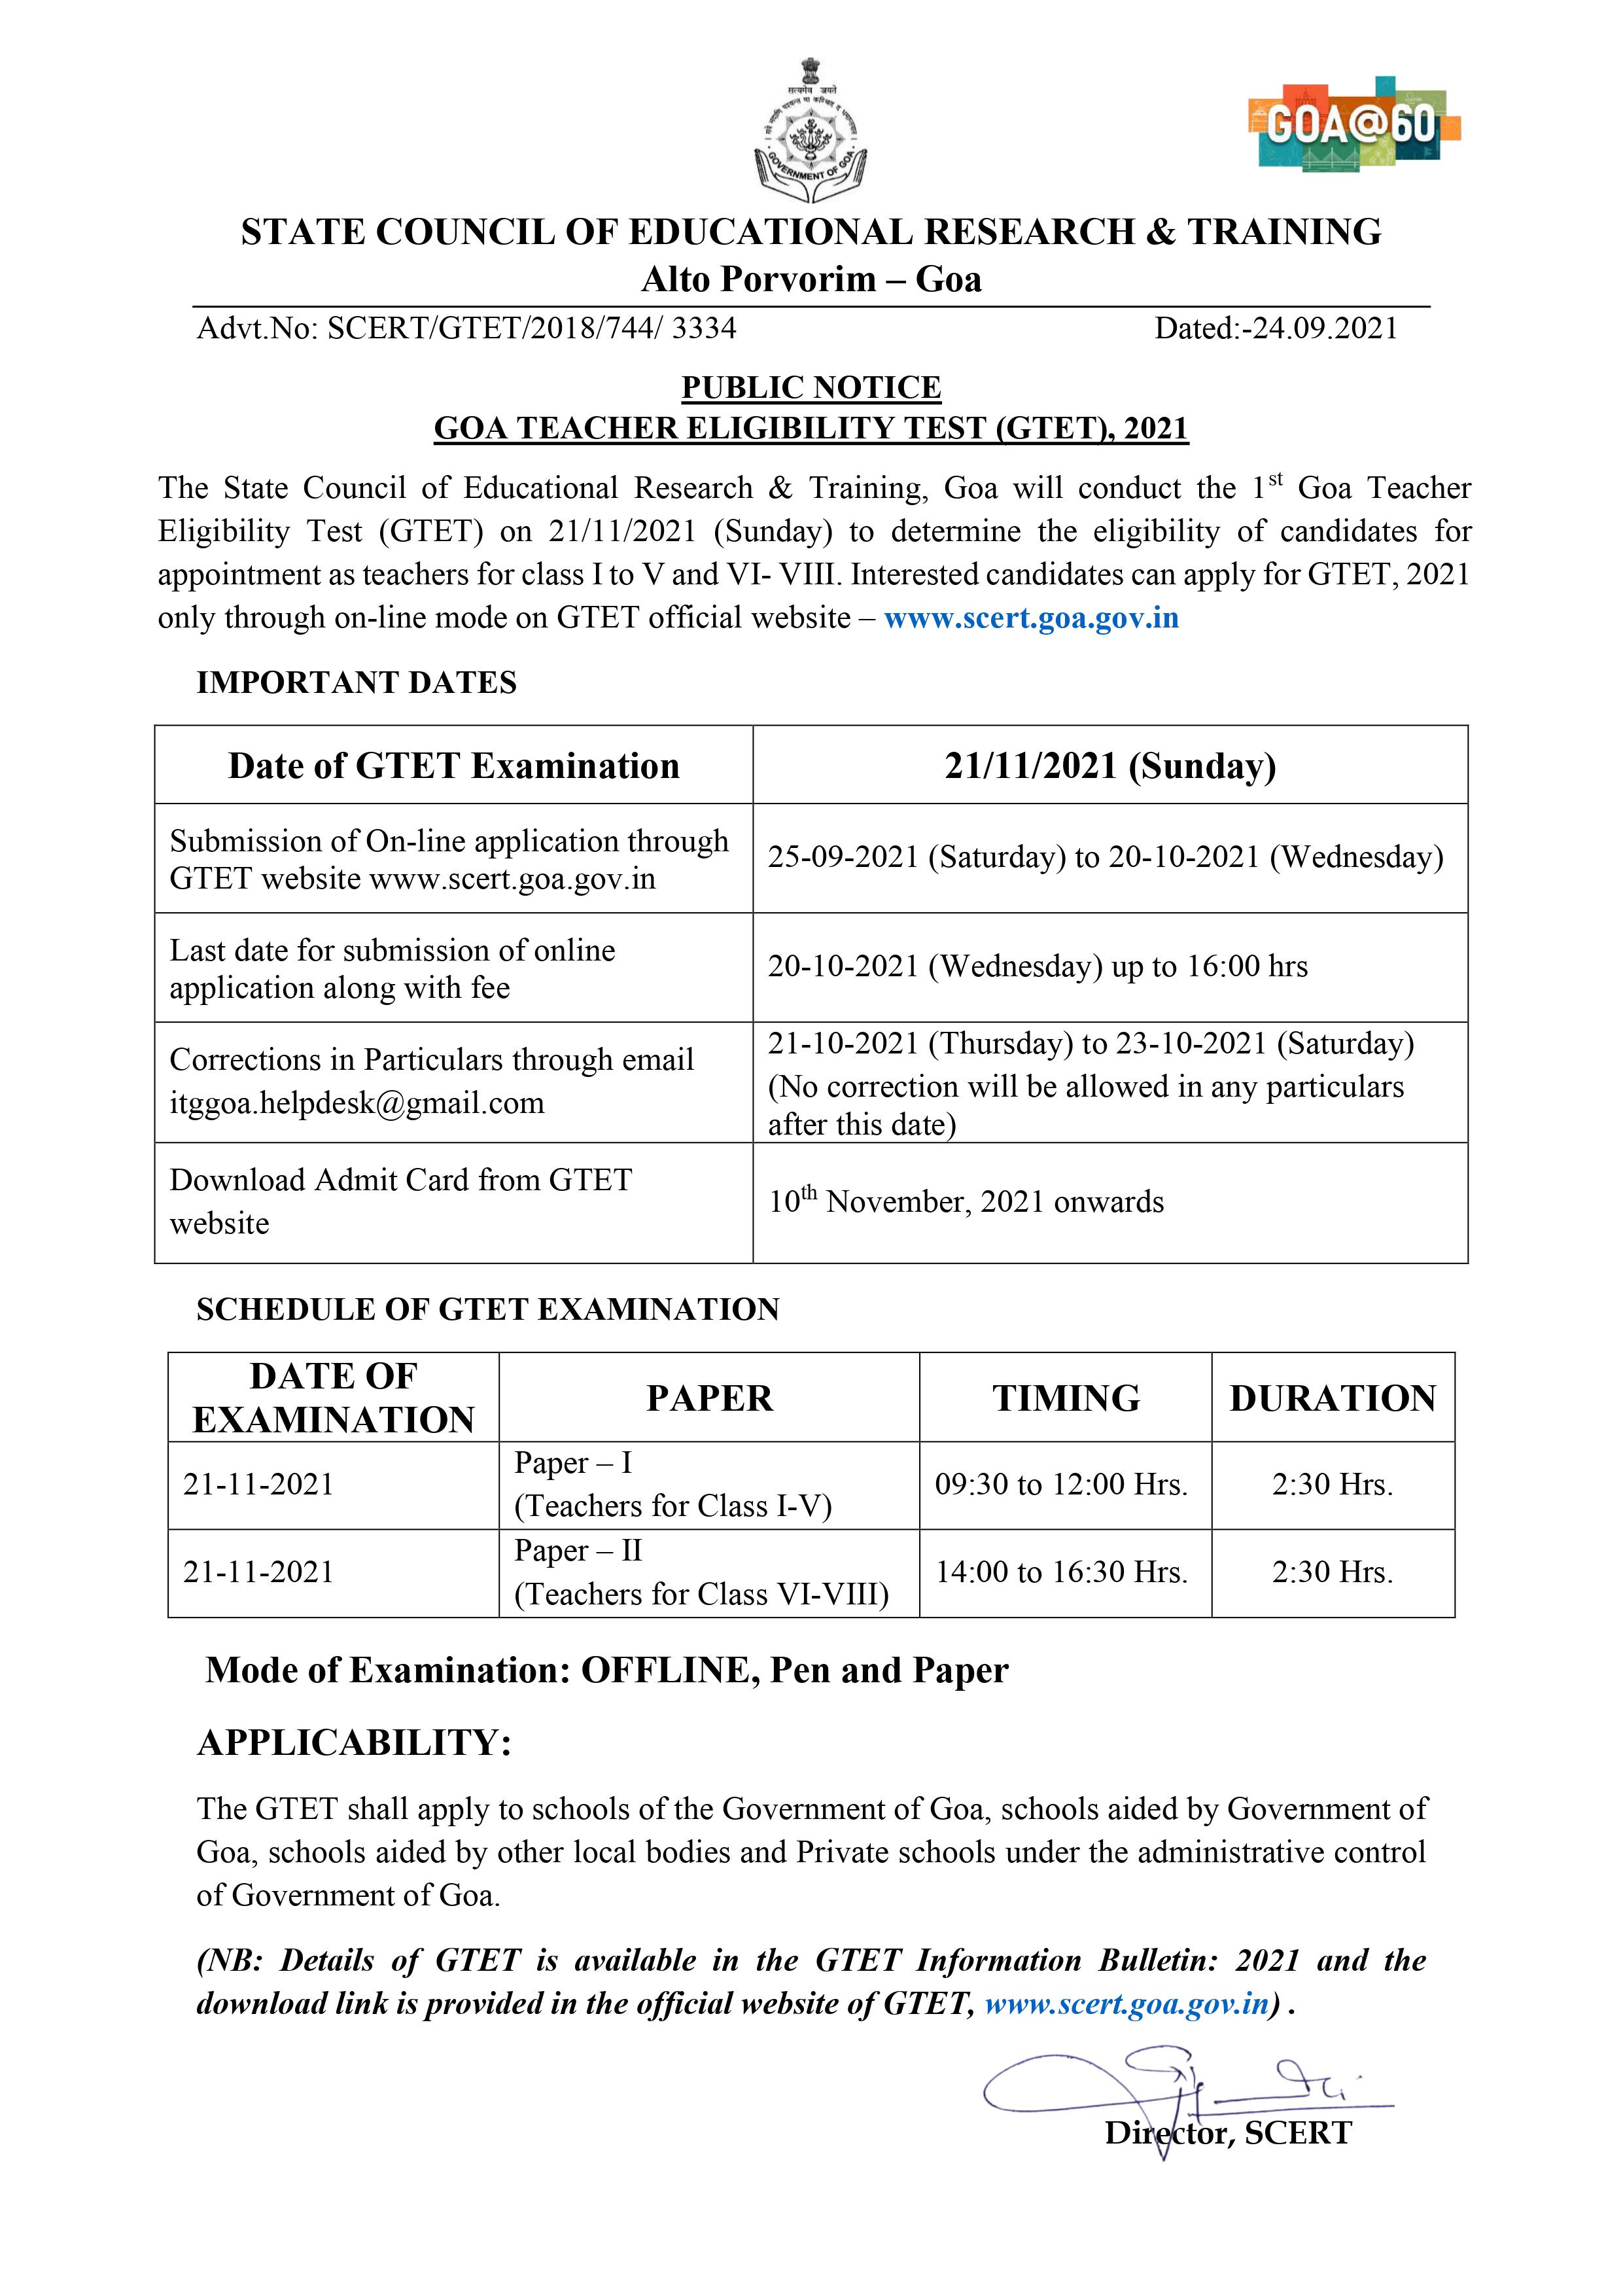 Public Notice for Goa Teachers Eligibility Test (GTET) 2021